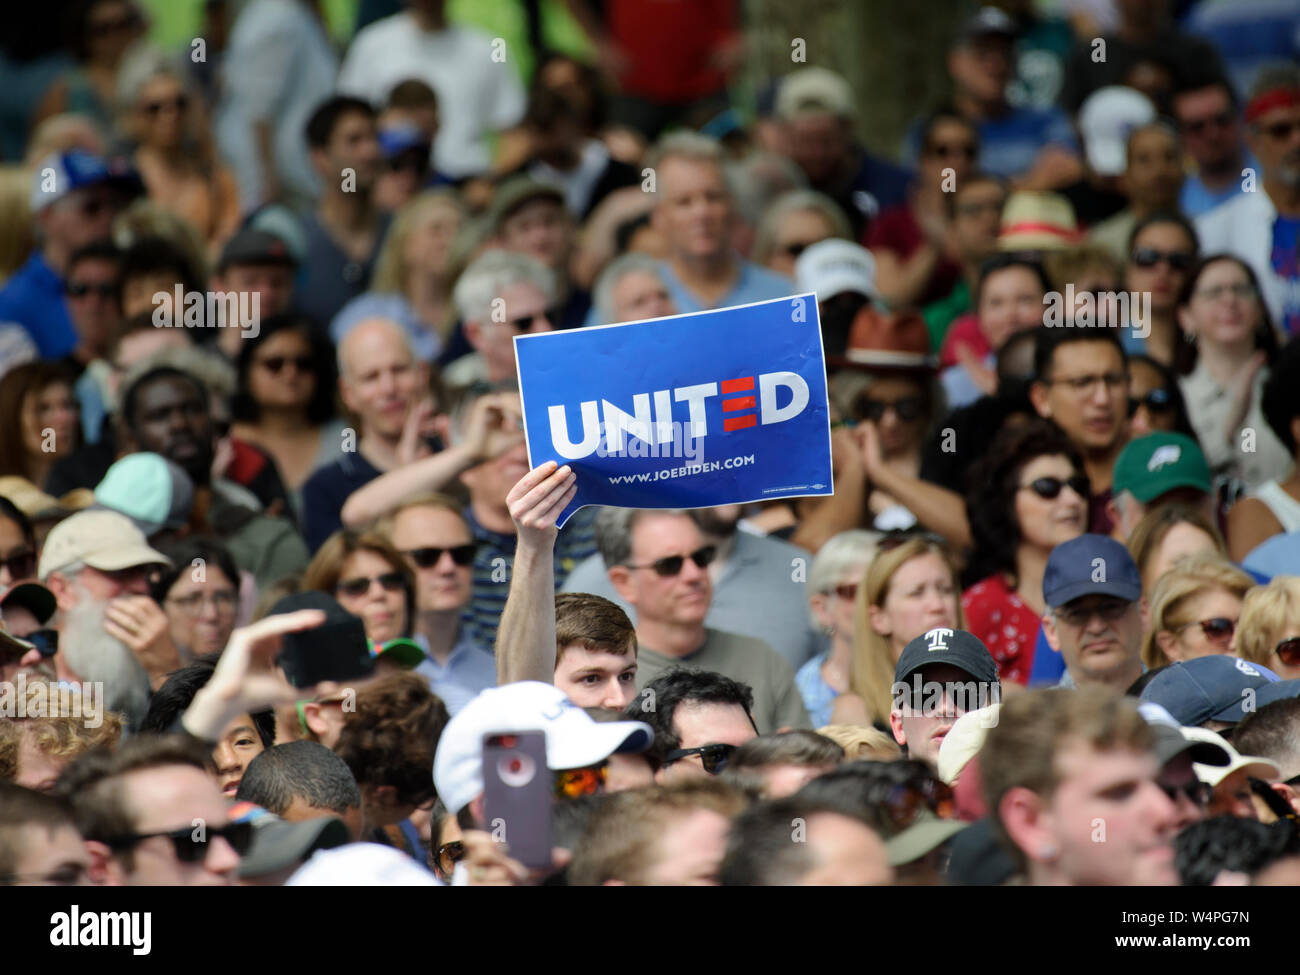 Les supporters affluent comme Joe Biden lance officiellement sa campagne présidentielle de 2020 lors d'un rassemblement à ovale Eakins à Philadelphie, Pennsylvanie. Banque D'Images